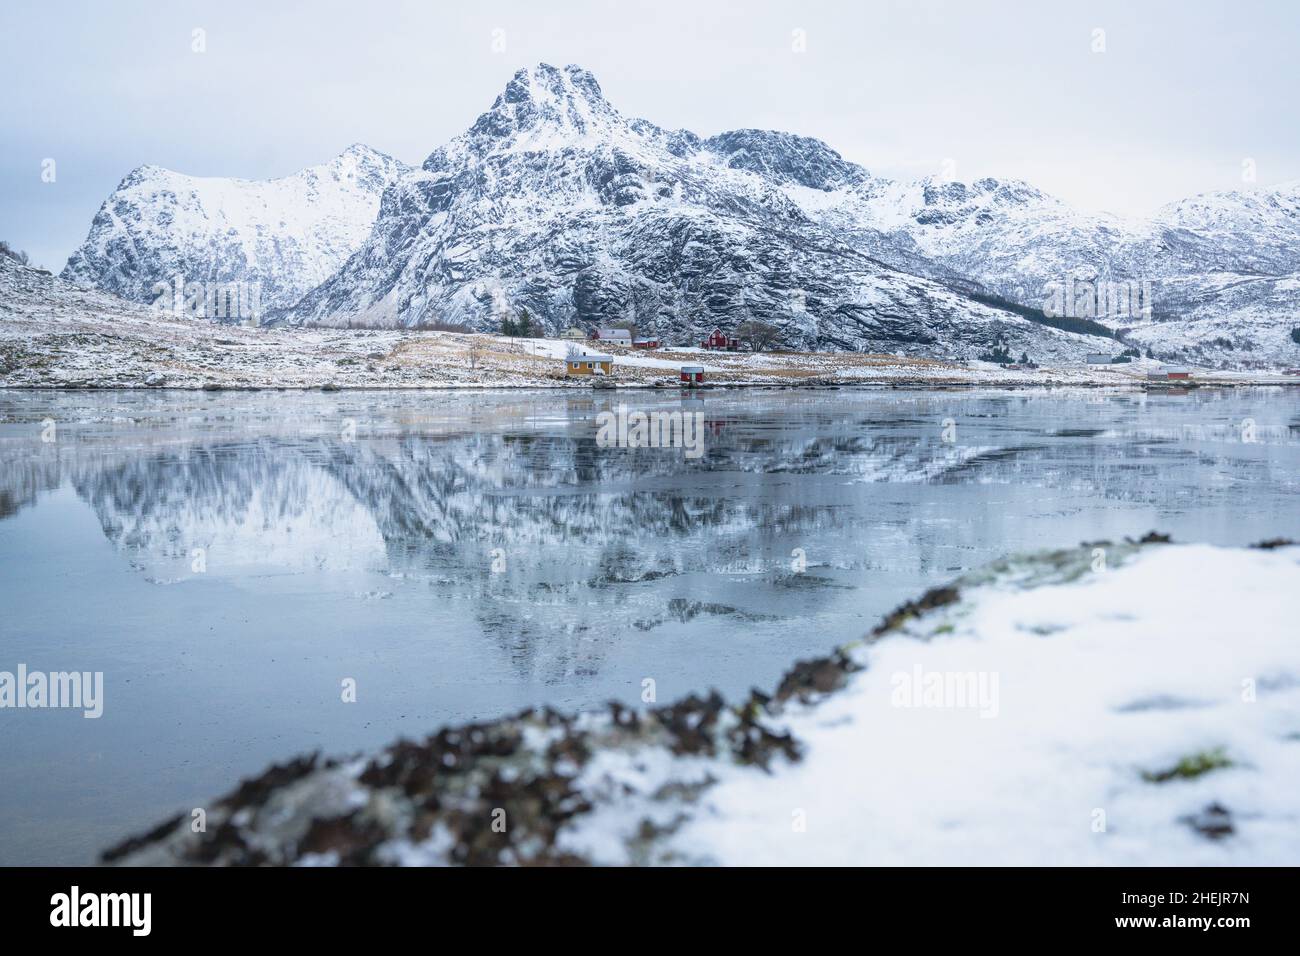 Fjord gelé avec montagnes enneigées se reflétant dans l'eau, Flakstadpollen, Flakstadoya, Nordland, îles Lofoten,Norvège Banque D'Images